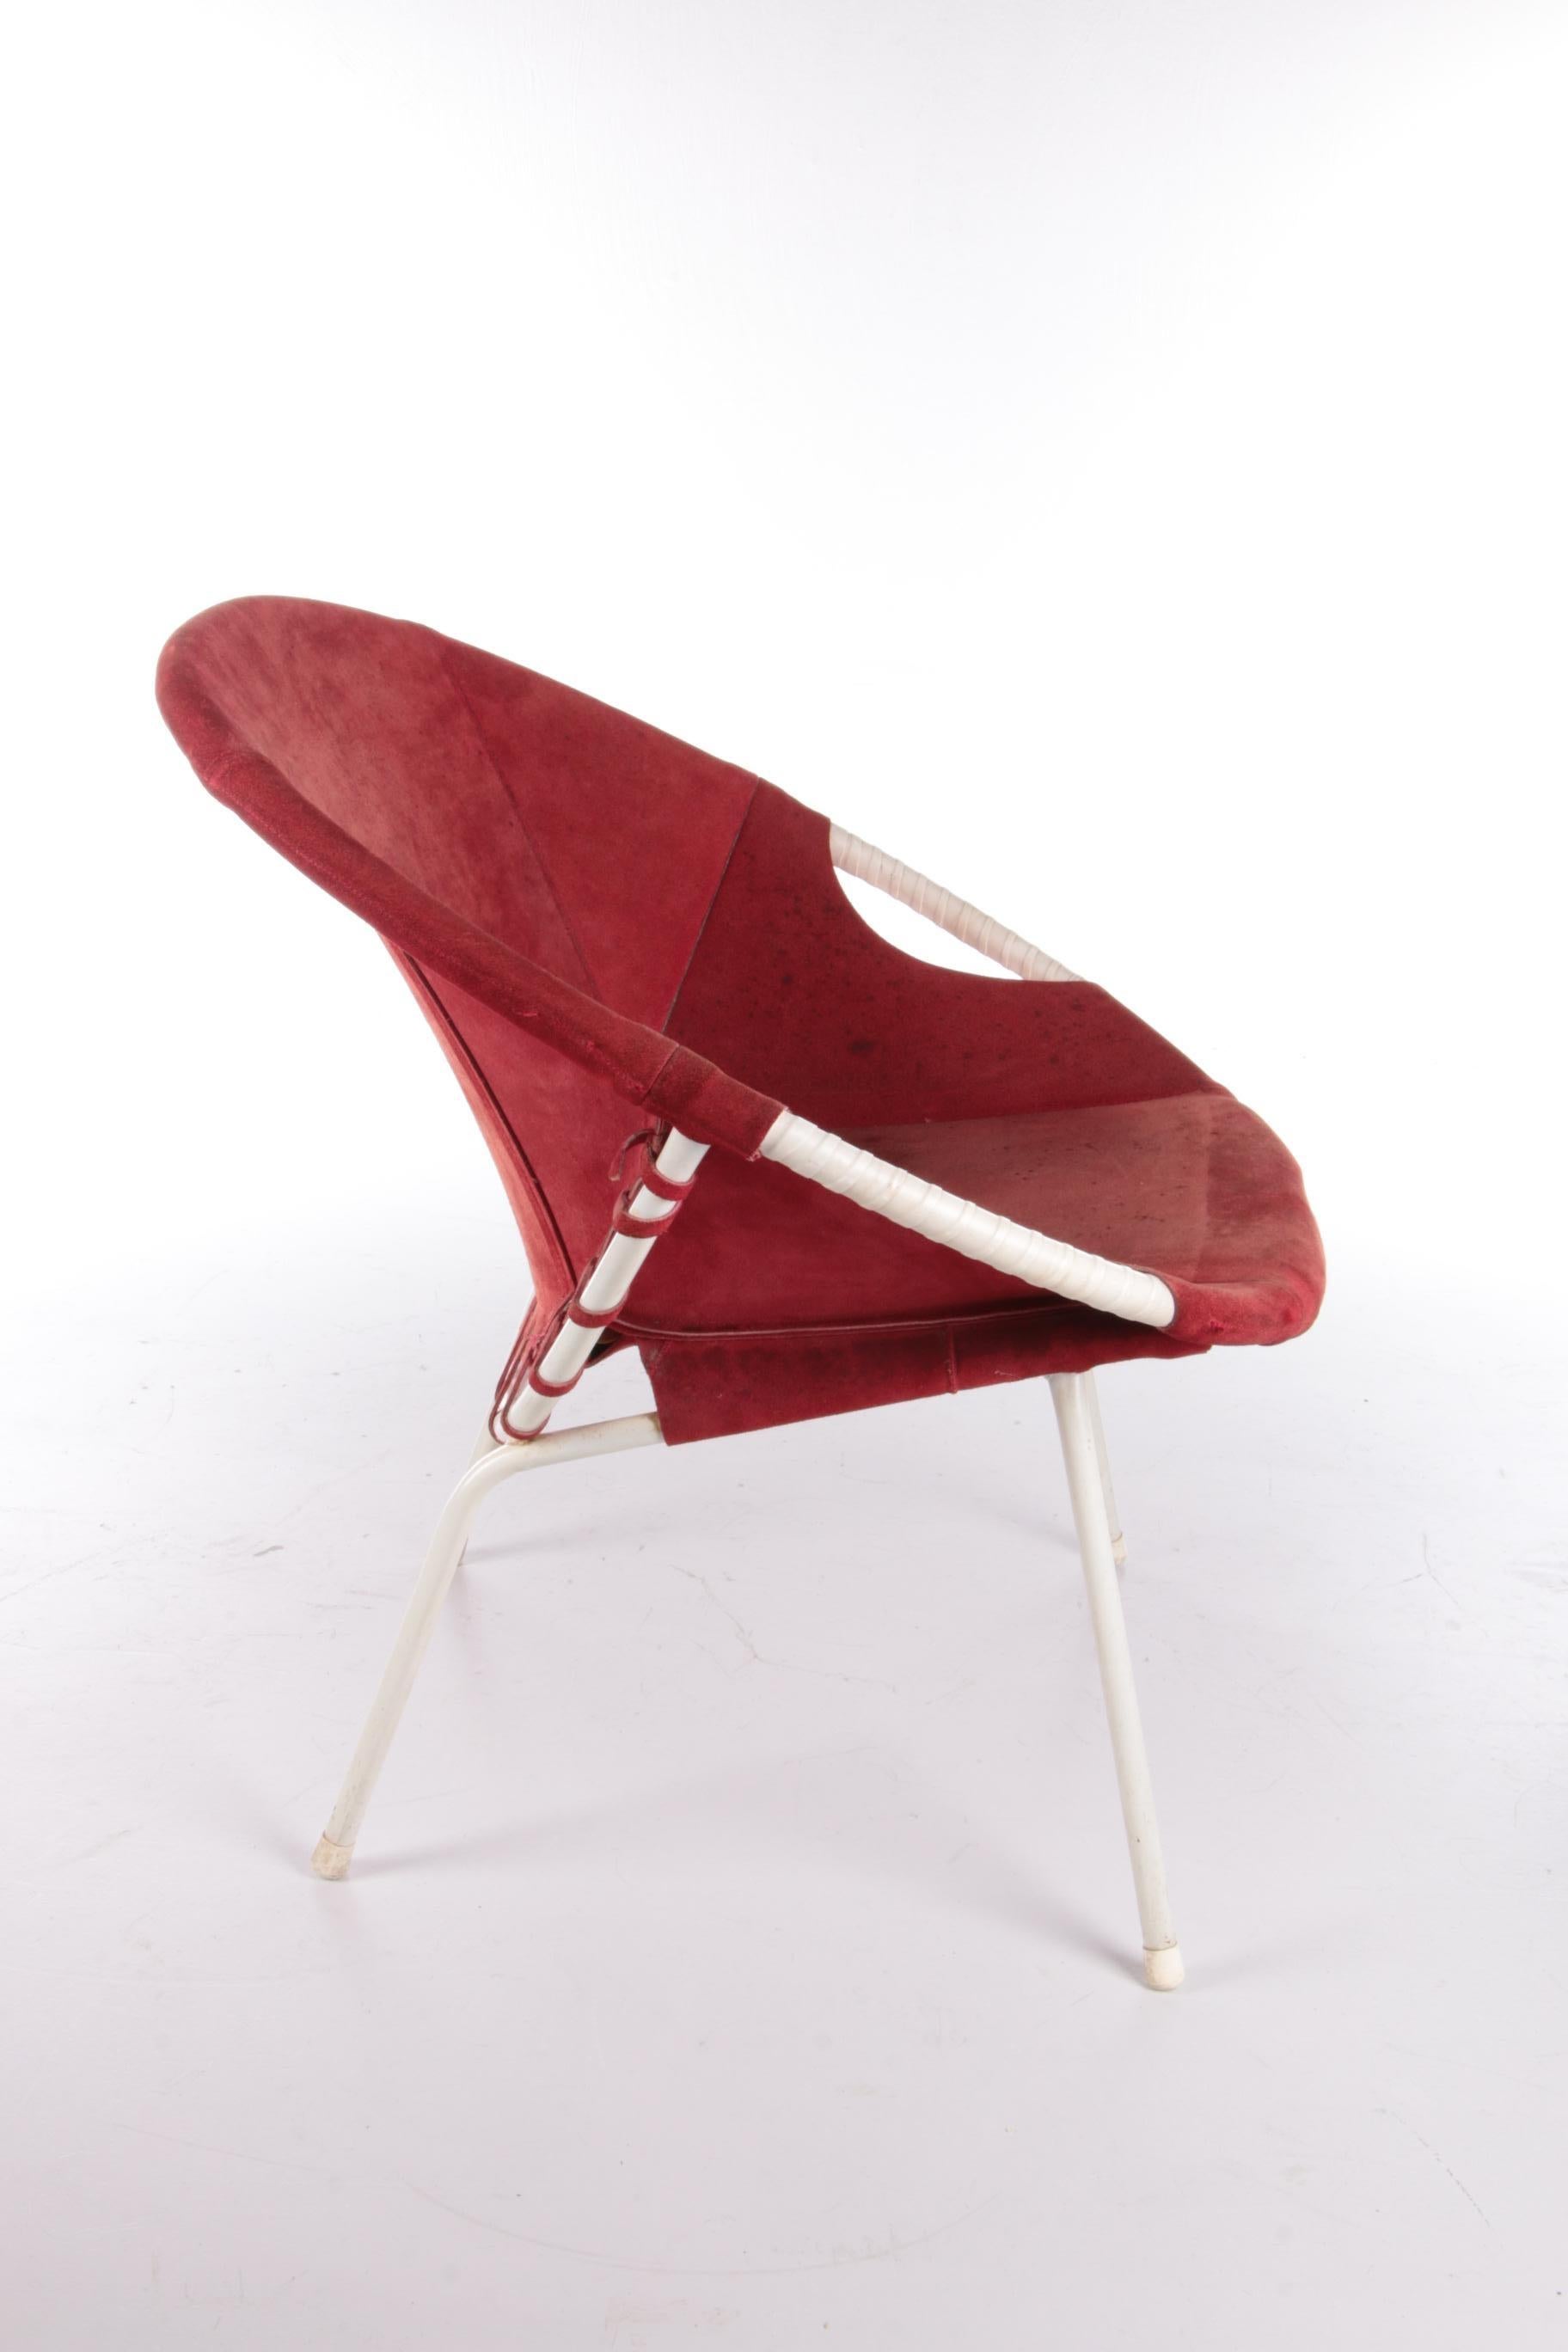 Metal Vintage Balloon Chair Design by Lusch Erzeugnis, 1960s